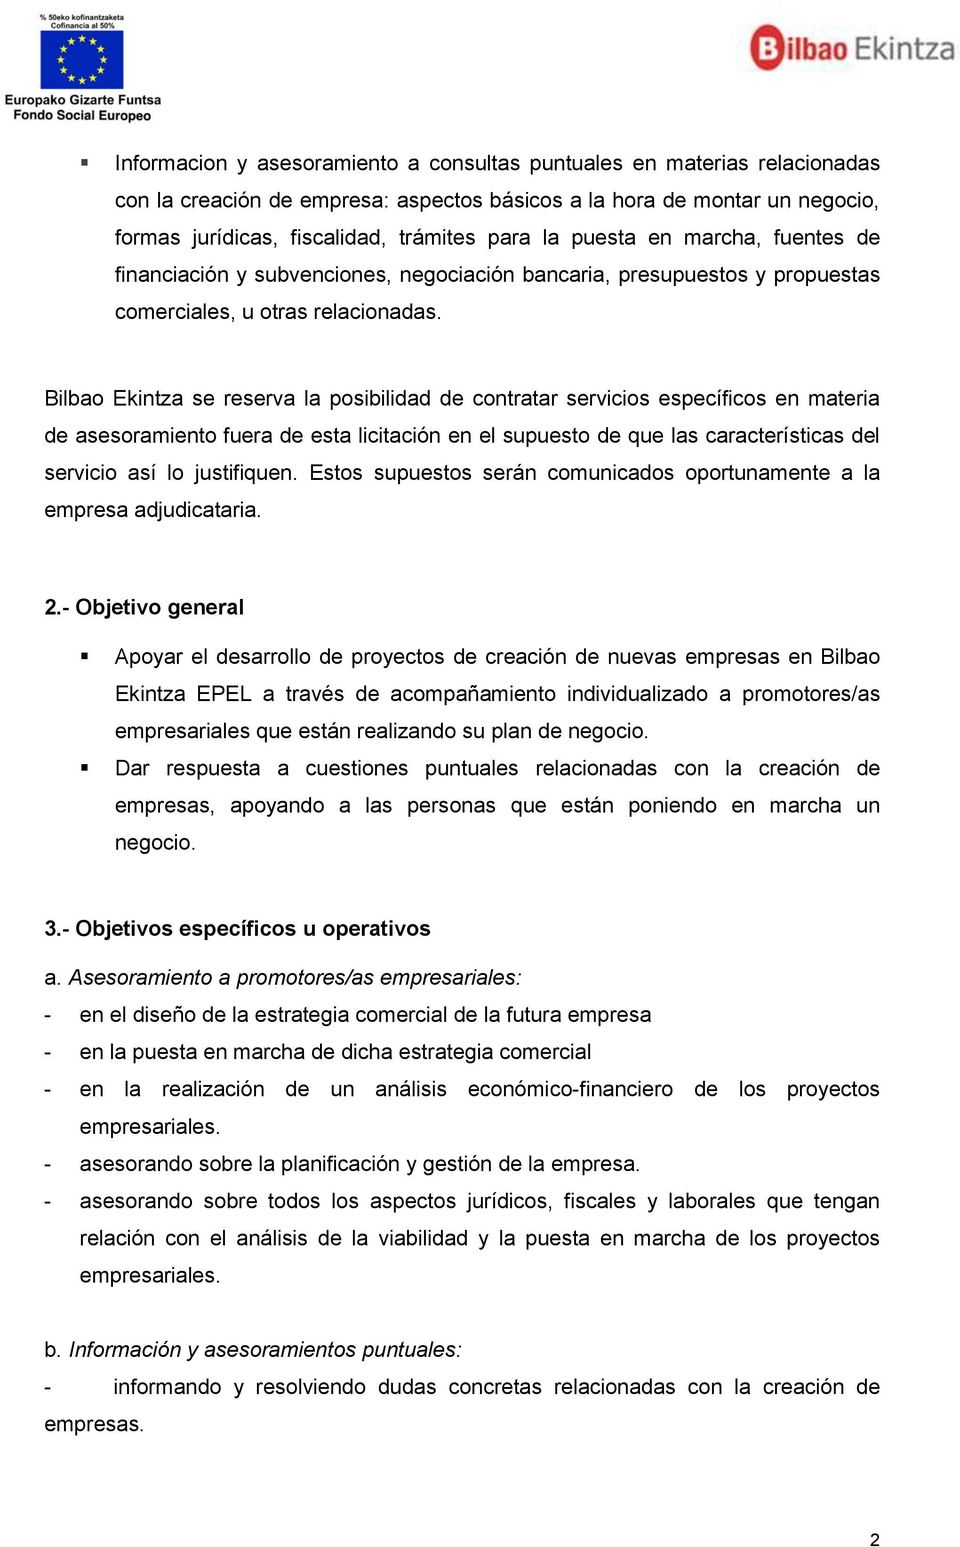 Bilbao Ekintza se reserva la posibilidad de contratar servicios específicos en materia de asesoramiento fuera de esta licitación en el supuesto de que las características del servicio así lo